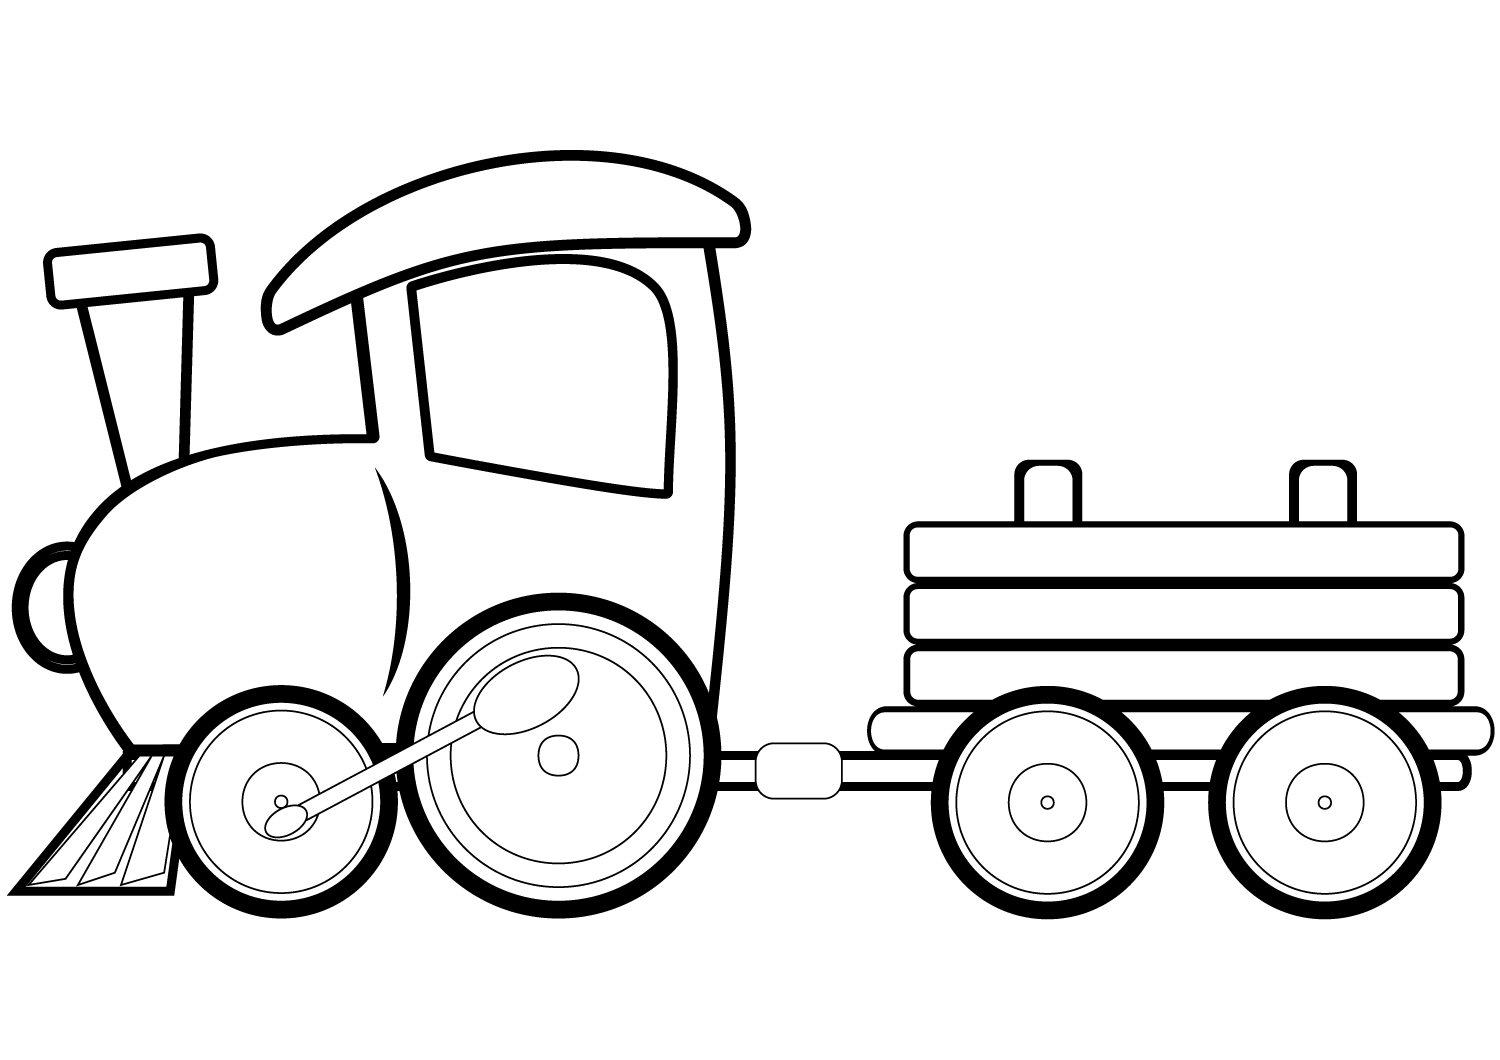 Tranh tô màu hình tàu hỏa đơn giản đẹp nhất cho bé